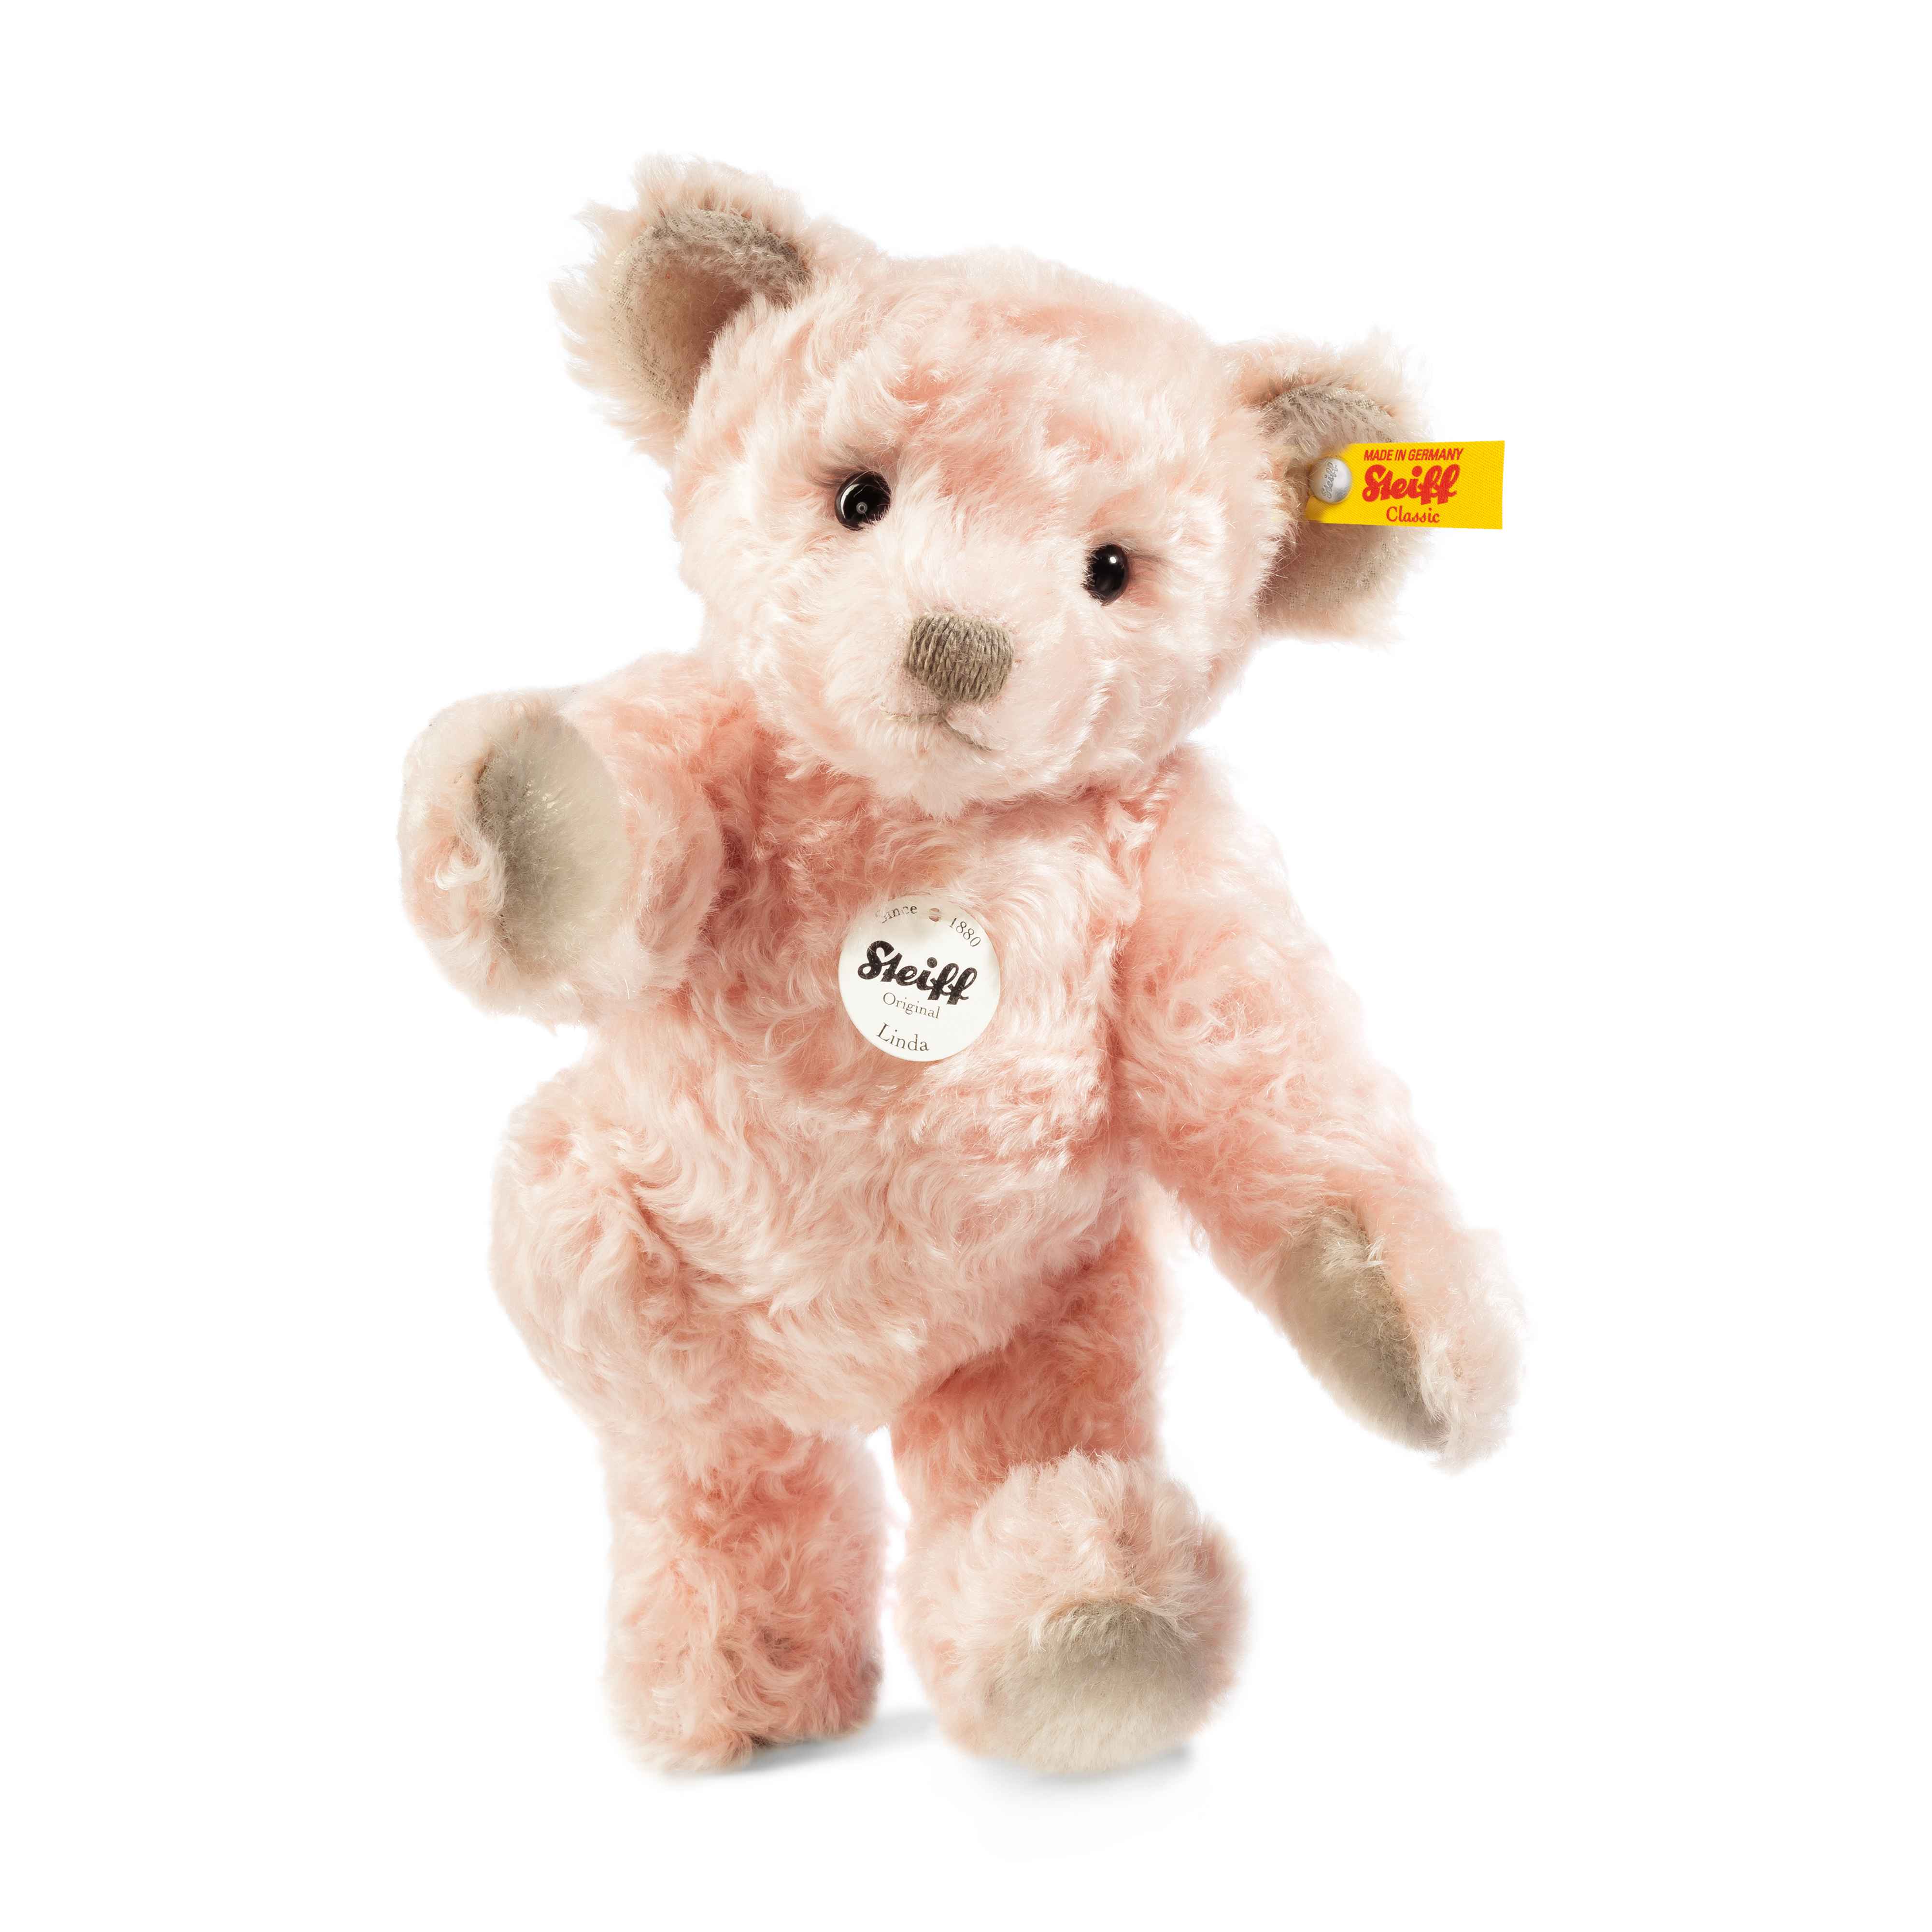 Classic Teddy bear Linda pale pink - Steiff Online Shop United Kingdom